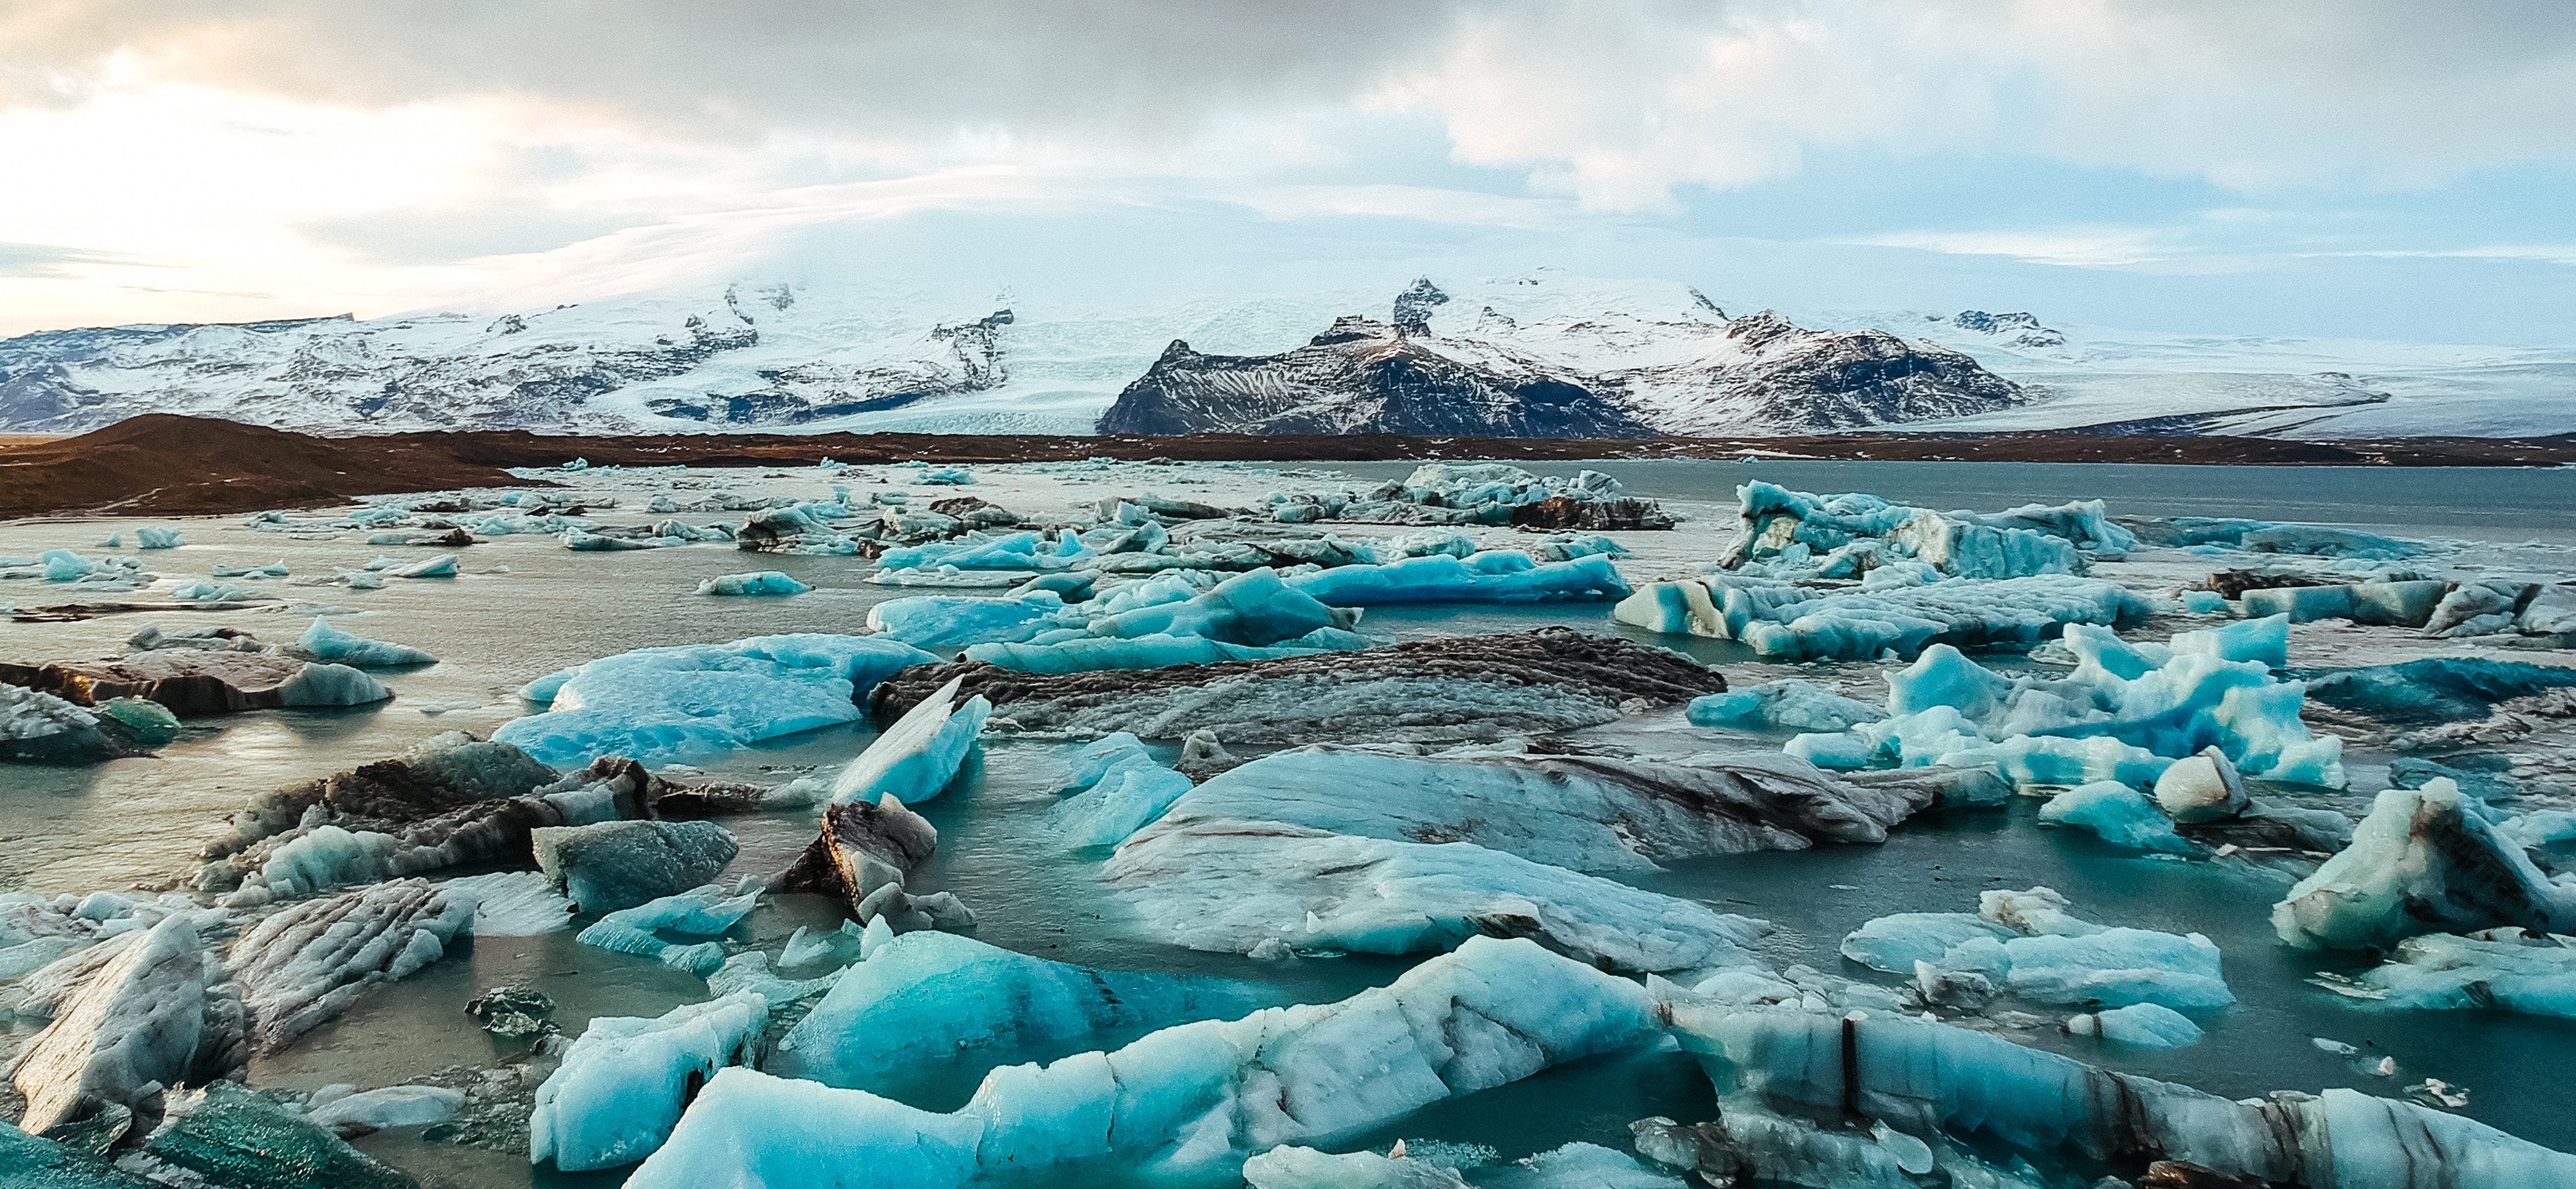 Lo scioglimento dei ghiacci e le correnti calde dell’Atlantico: i passi avanti della scienza per informazioni sempre più dettagliate